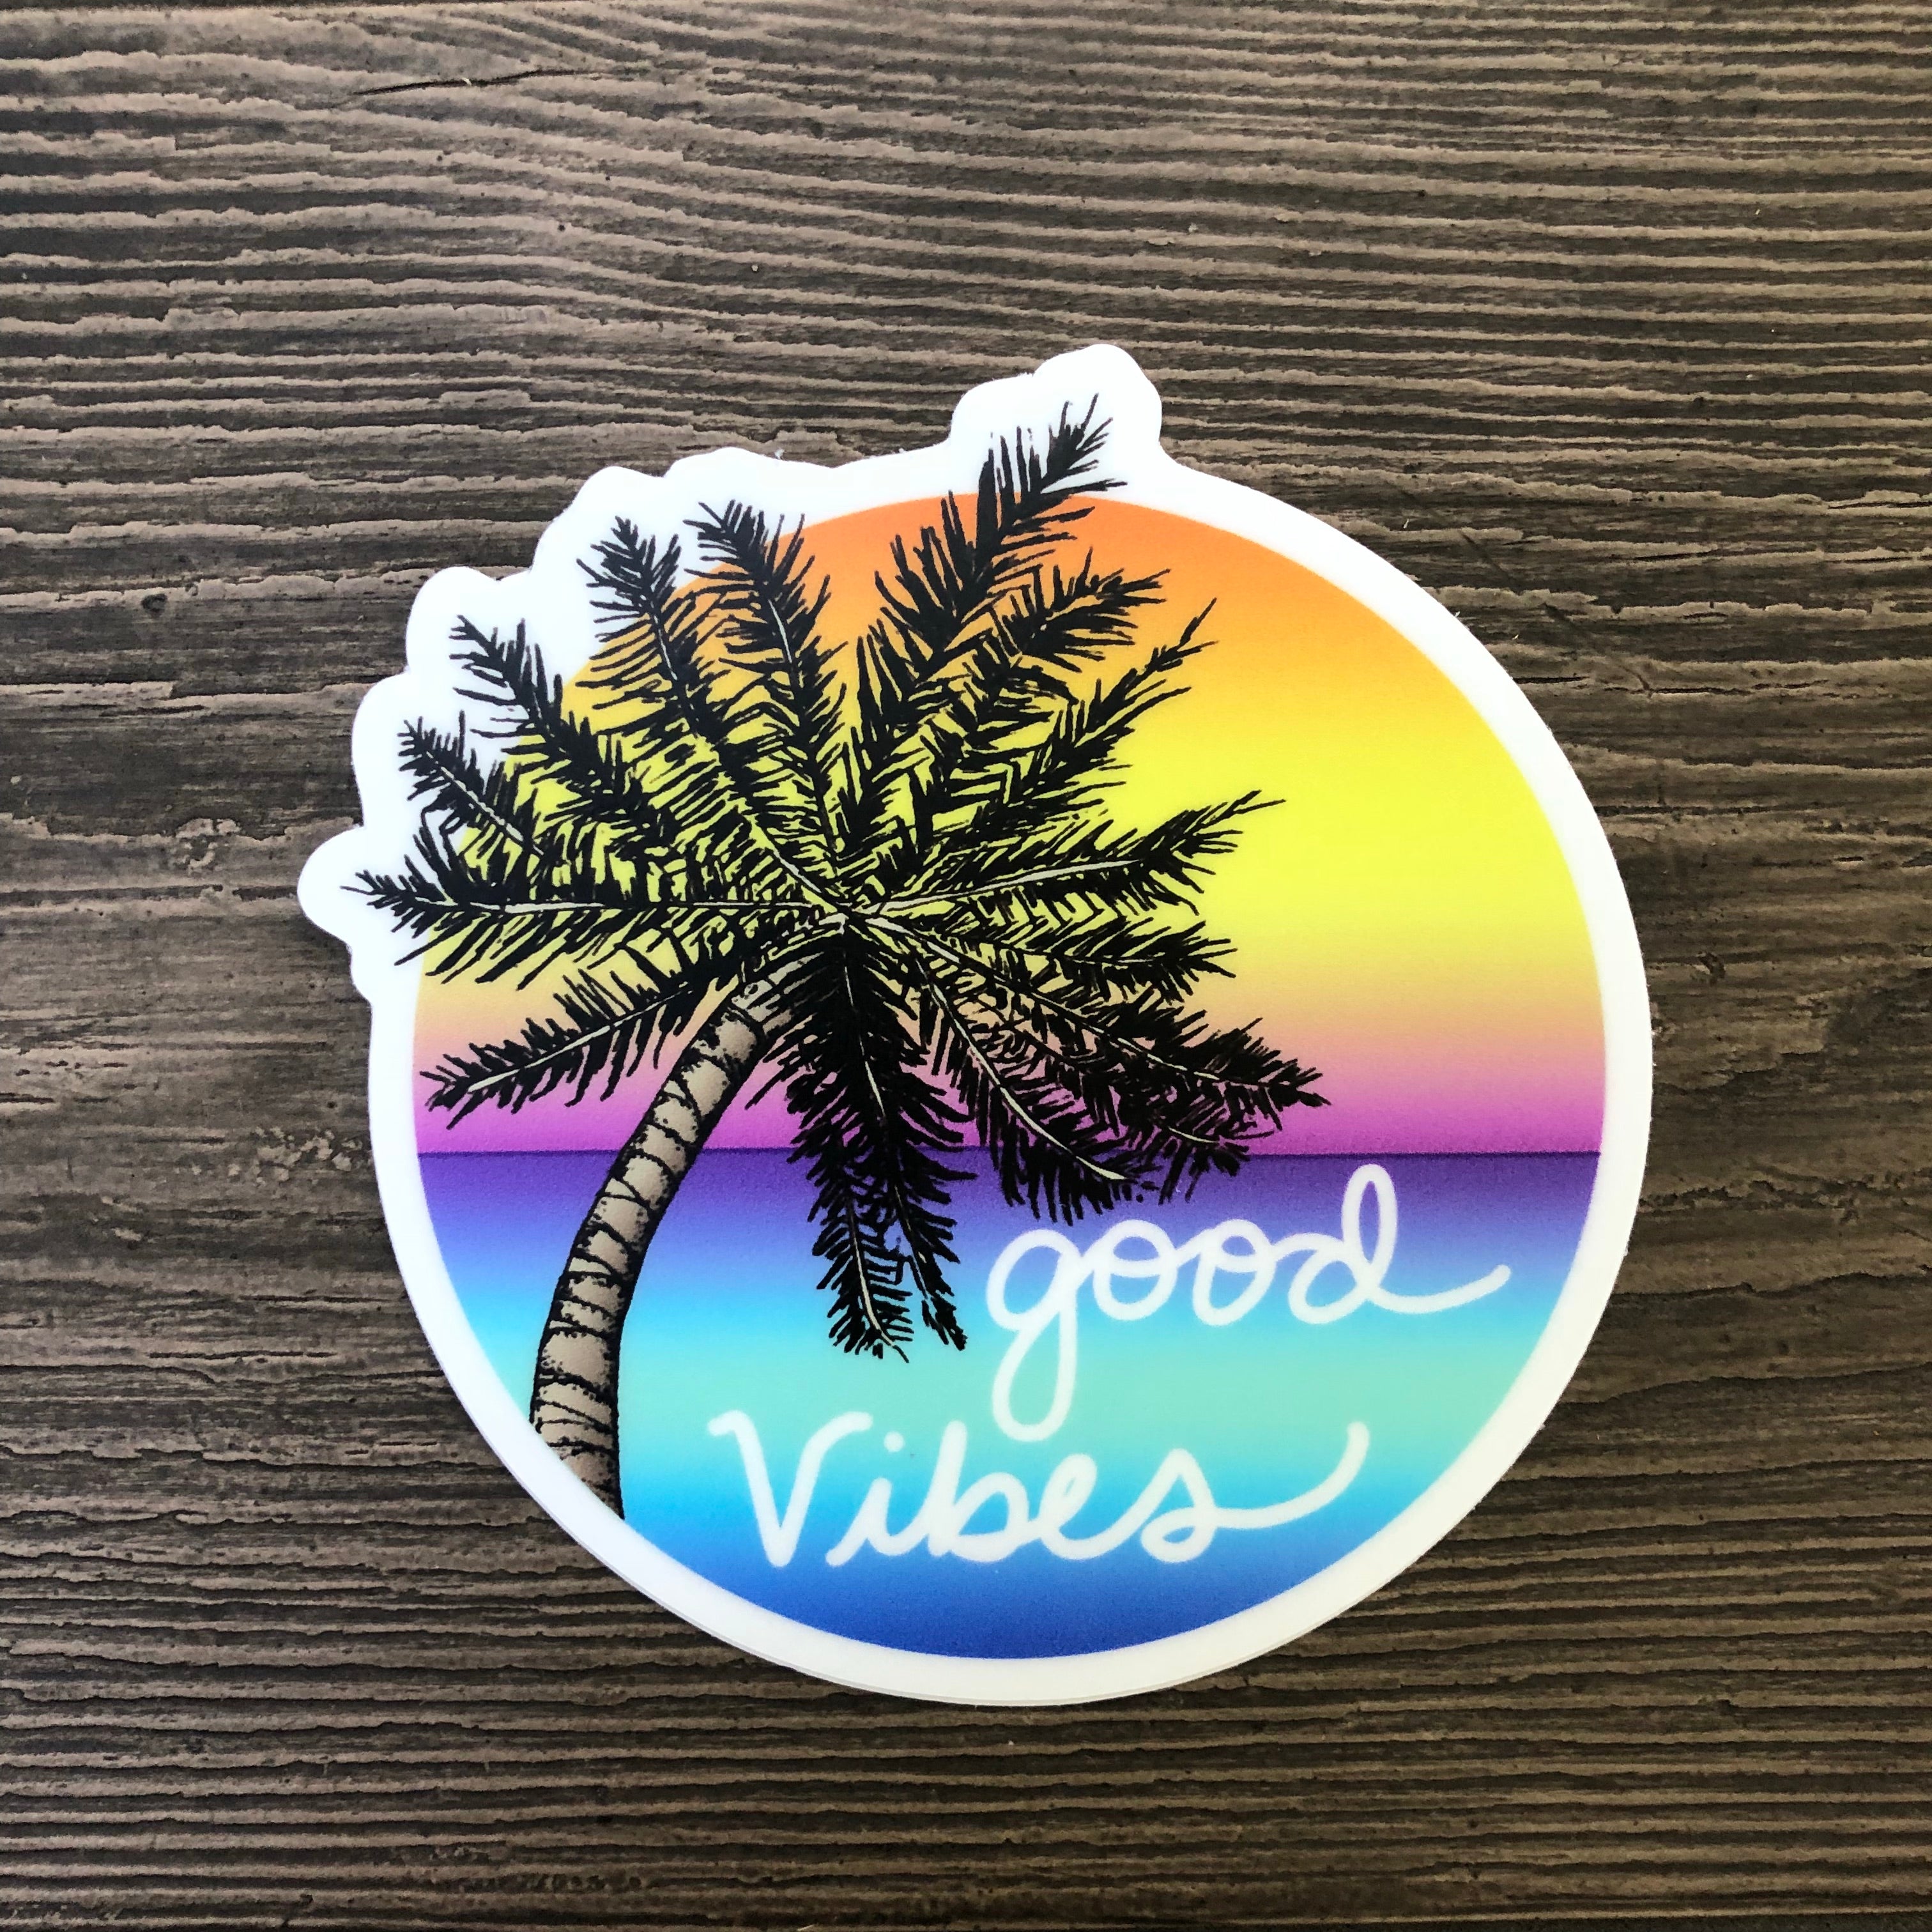 Good Vibes Sticker-Vinyl Sticker-Roam Wild Designs